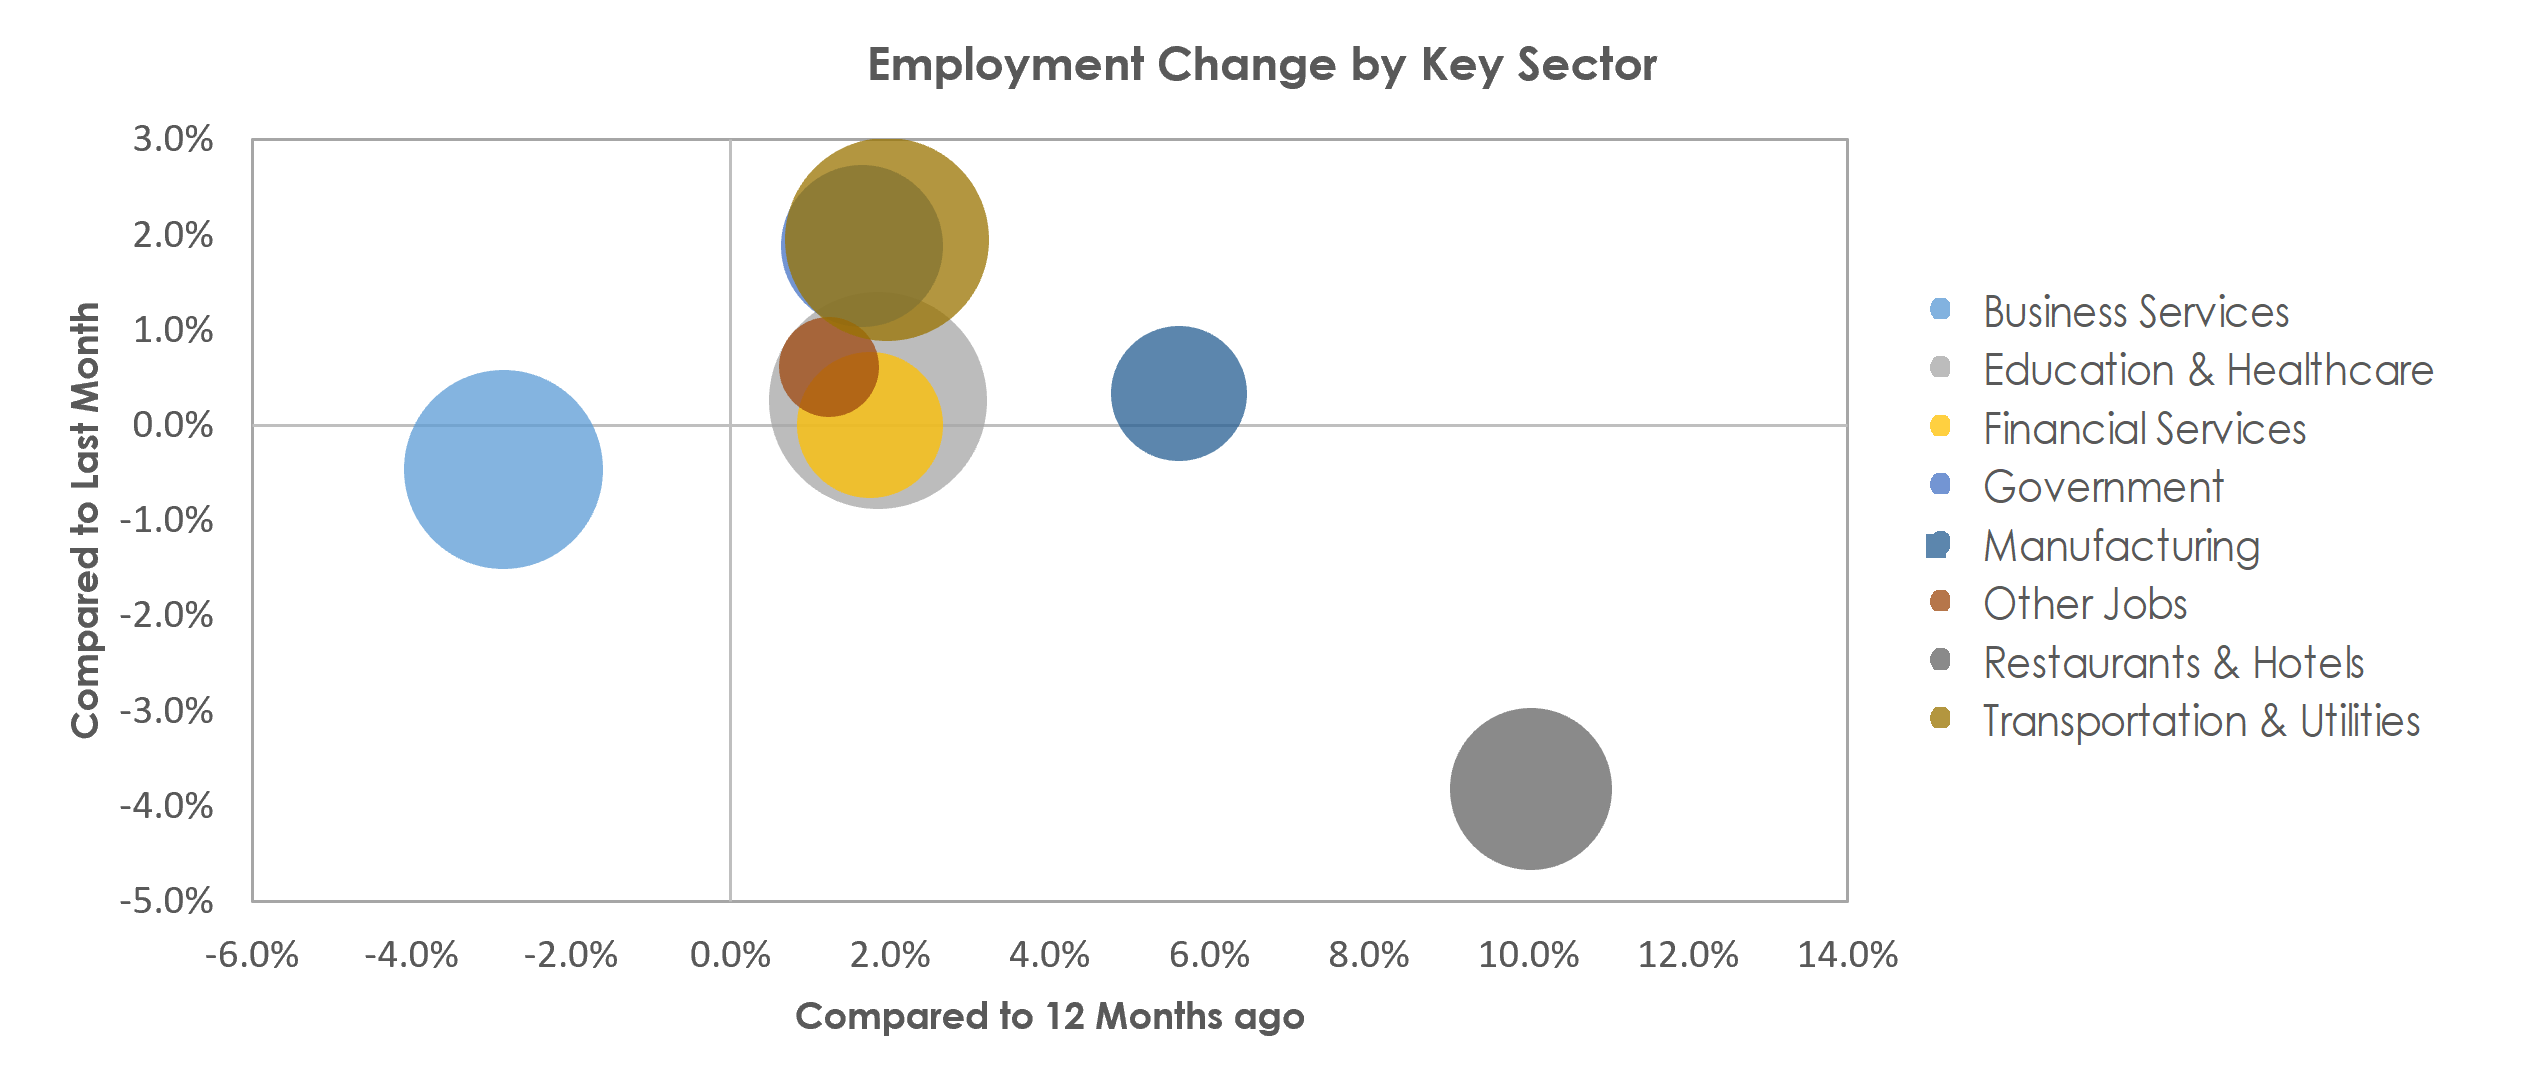 Bridgeport-Stamford-Norwalk, CT Unemployment by Industry November 2022